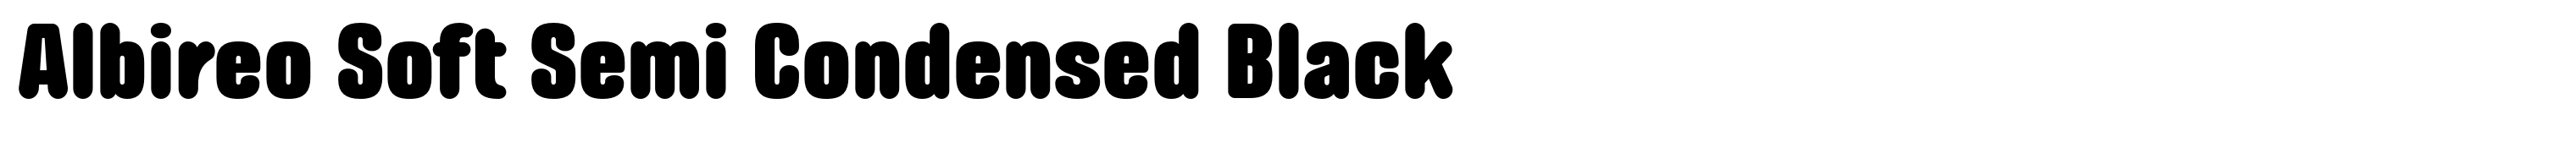 Albireo Soft Semi Condensed Black